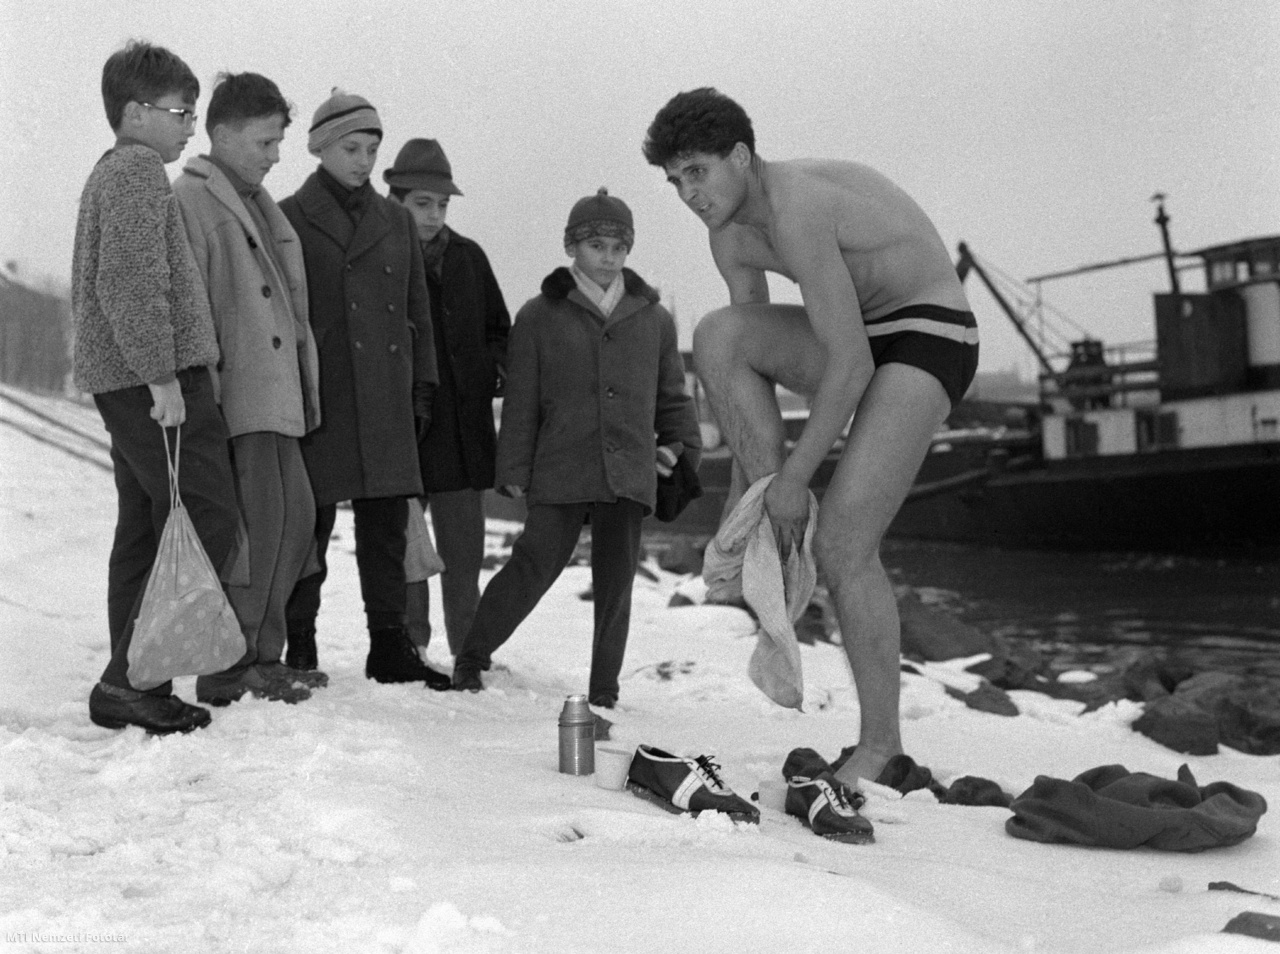 Budapest, 1965. november 22. Kíváncsi gyerekek nézik, amint Schirilla György, a Vasas Sport Club hosszútávfutója a jeges Duna folyóban történt fürdés után megtörölközik a parton. A sportoló a közeljövőben meg szeretné javítani 84,5 kilométeres téli maratoni rekordját, és a 100 kilométeres távon indul el. Minden reggel 7, este pedig 25 kilométert fut, hetenként három alkalommal mezítláb, fürdőnadrágban teszi mindezt, utána megfürdik a Duna folyóban. A férfi 12 éves kora óta vegetáriánus, és 1957-től évente legalább egyszer átússza telente a jeges Dunát